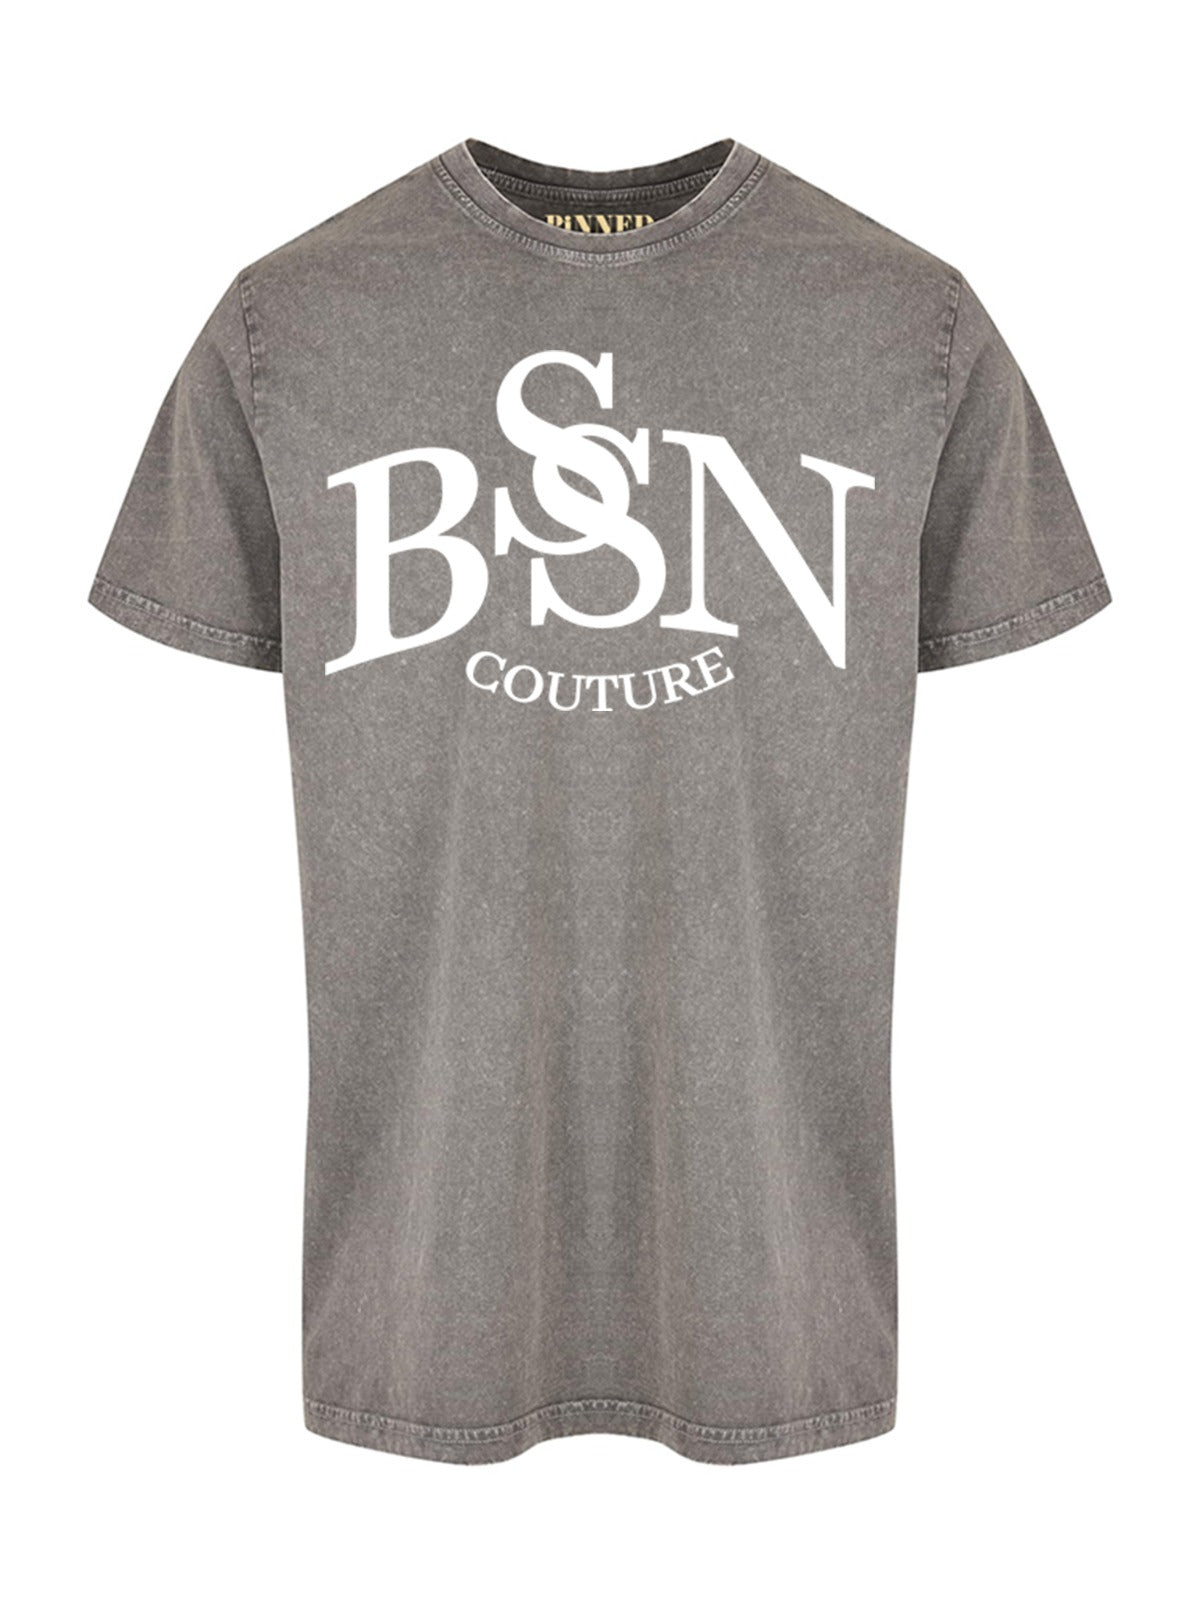 BSN COUTURE shirt - Grey